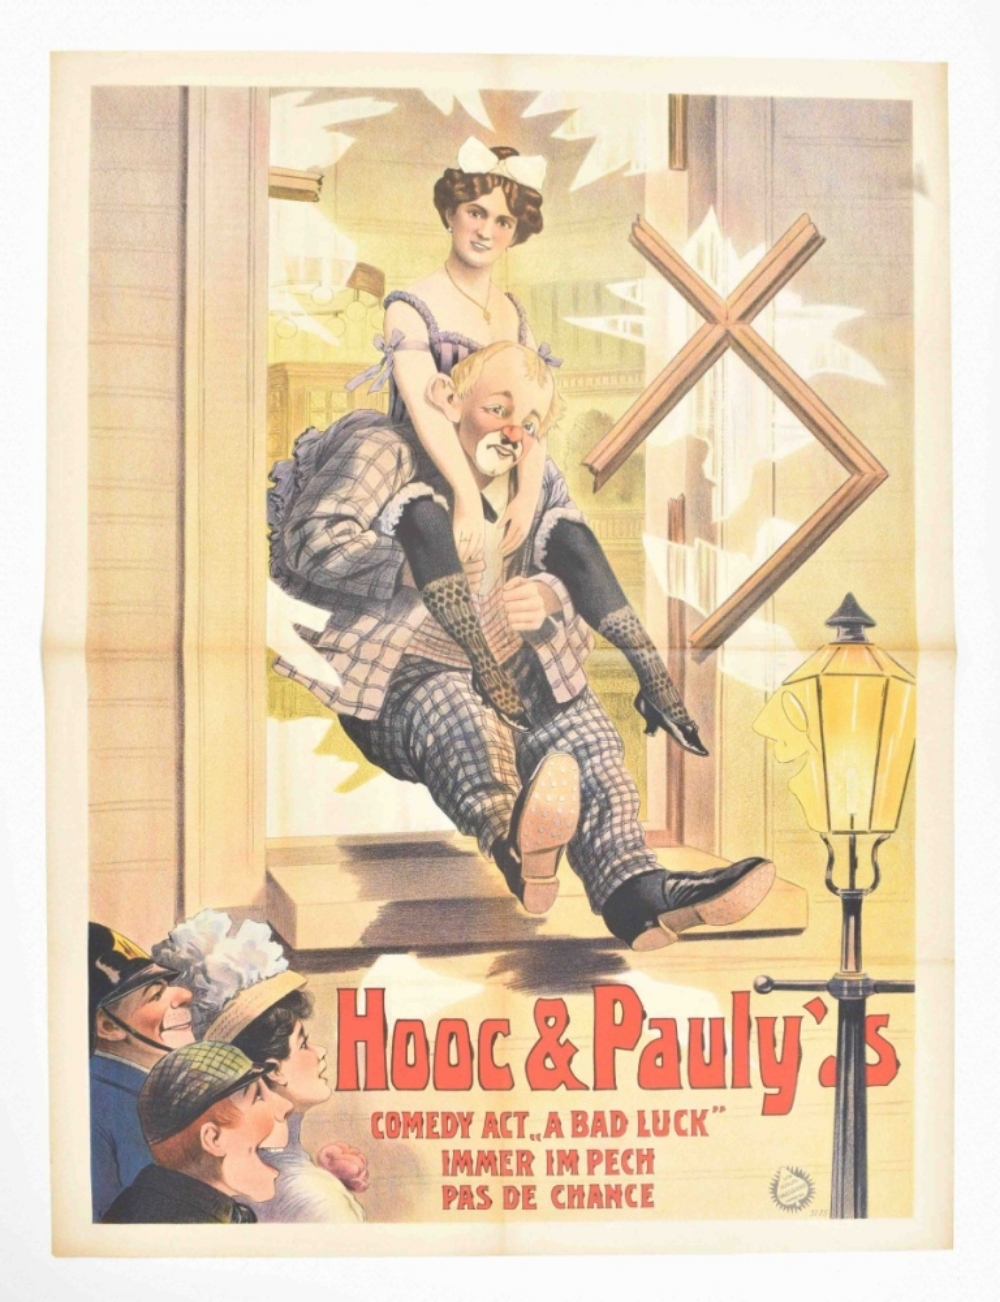 [Clowns] Hooc & Pauly comedy act "A bad luck". [...]. Pas de chance. Friedländer, Hamburg, 1910